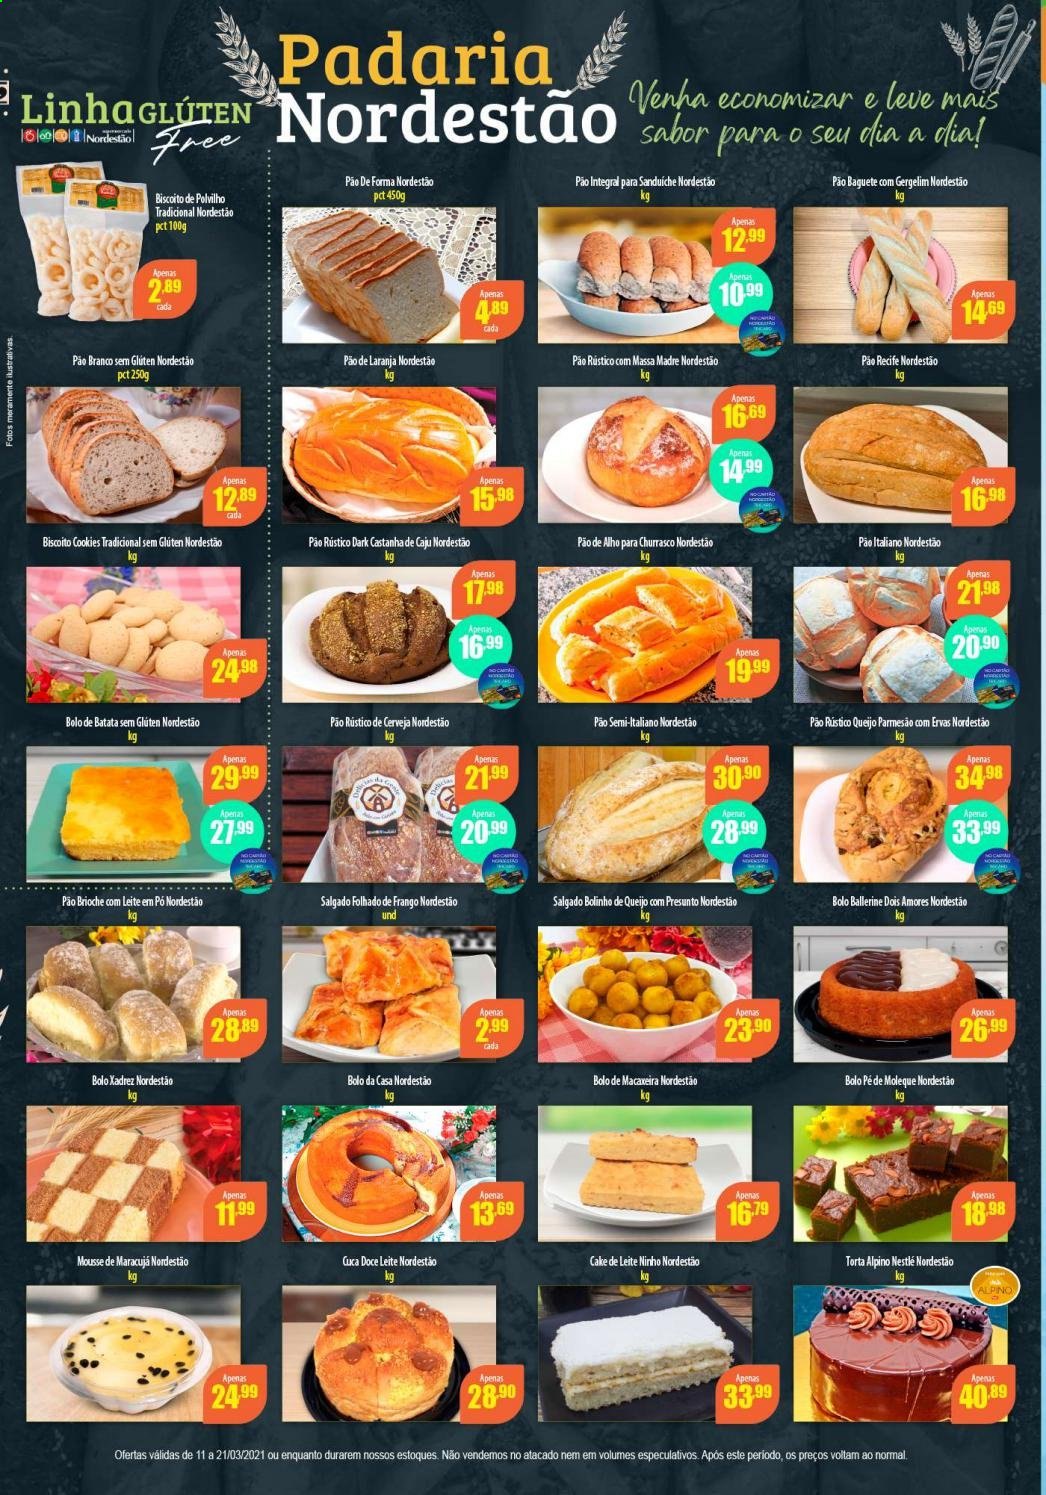 thumbnail - Folheto Nordestão - 11/03/2021 - 21/03/2021 - Produtos em promoção - pão, baguete, pão de forma, pão de alho, bolo, torta, brioche, presunto, parmesão, biscoito, Nestlé, biscoito de polvilho, leite em pó, Ninho. Página 2.